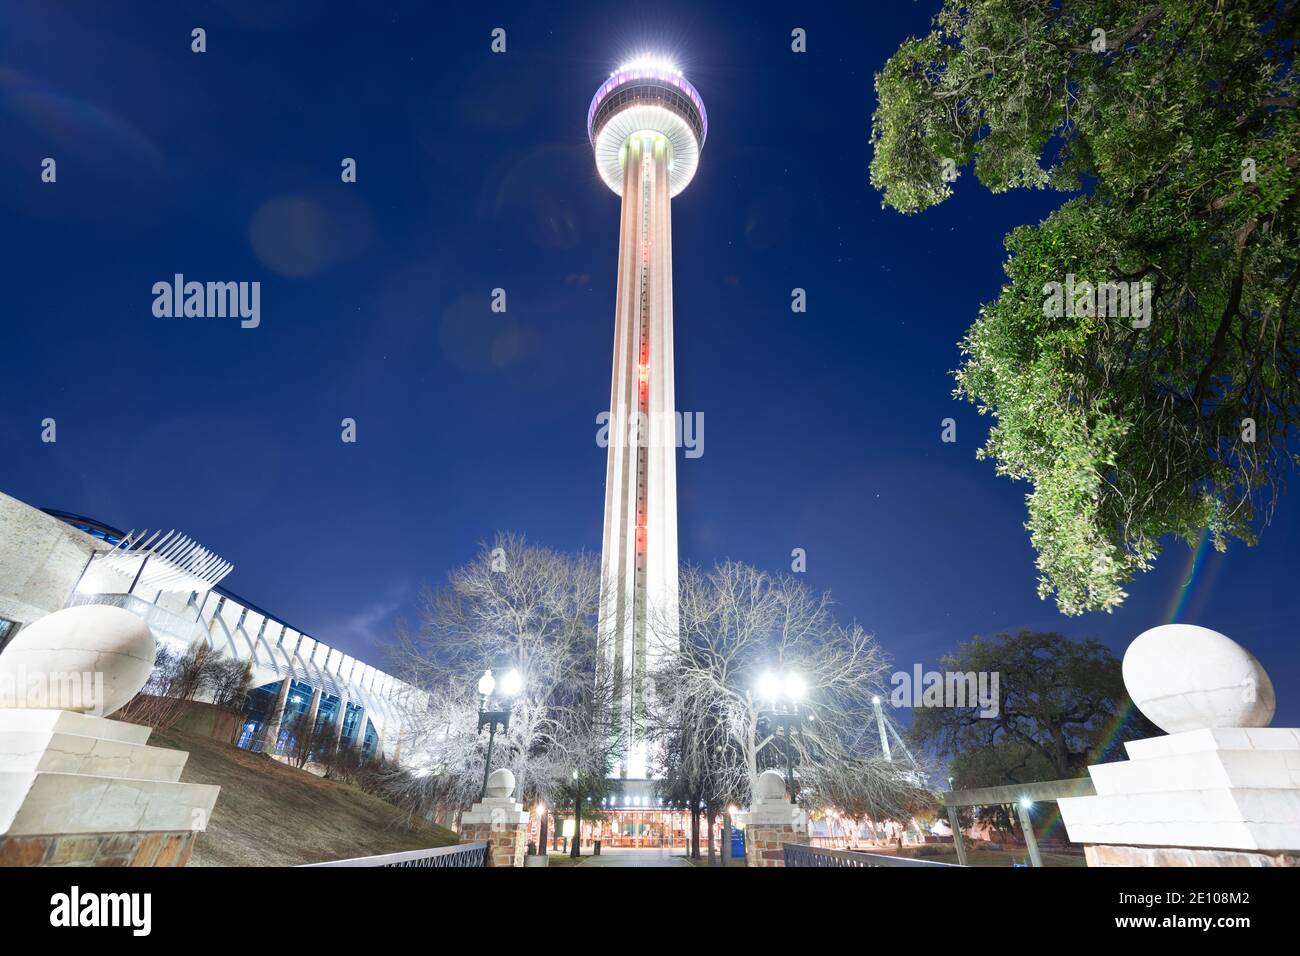 SAN ANTONIO, TEXAS - 31 GENNAIO 2018: Torre delle Americhe di notte. La torre di osservazione di 750 piedi (229 metri) è stata aperta nel 1968. Foto Stock